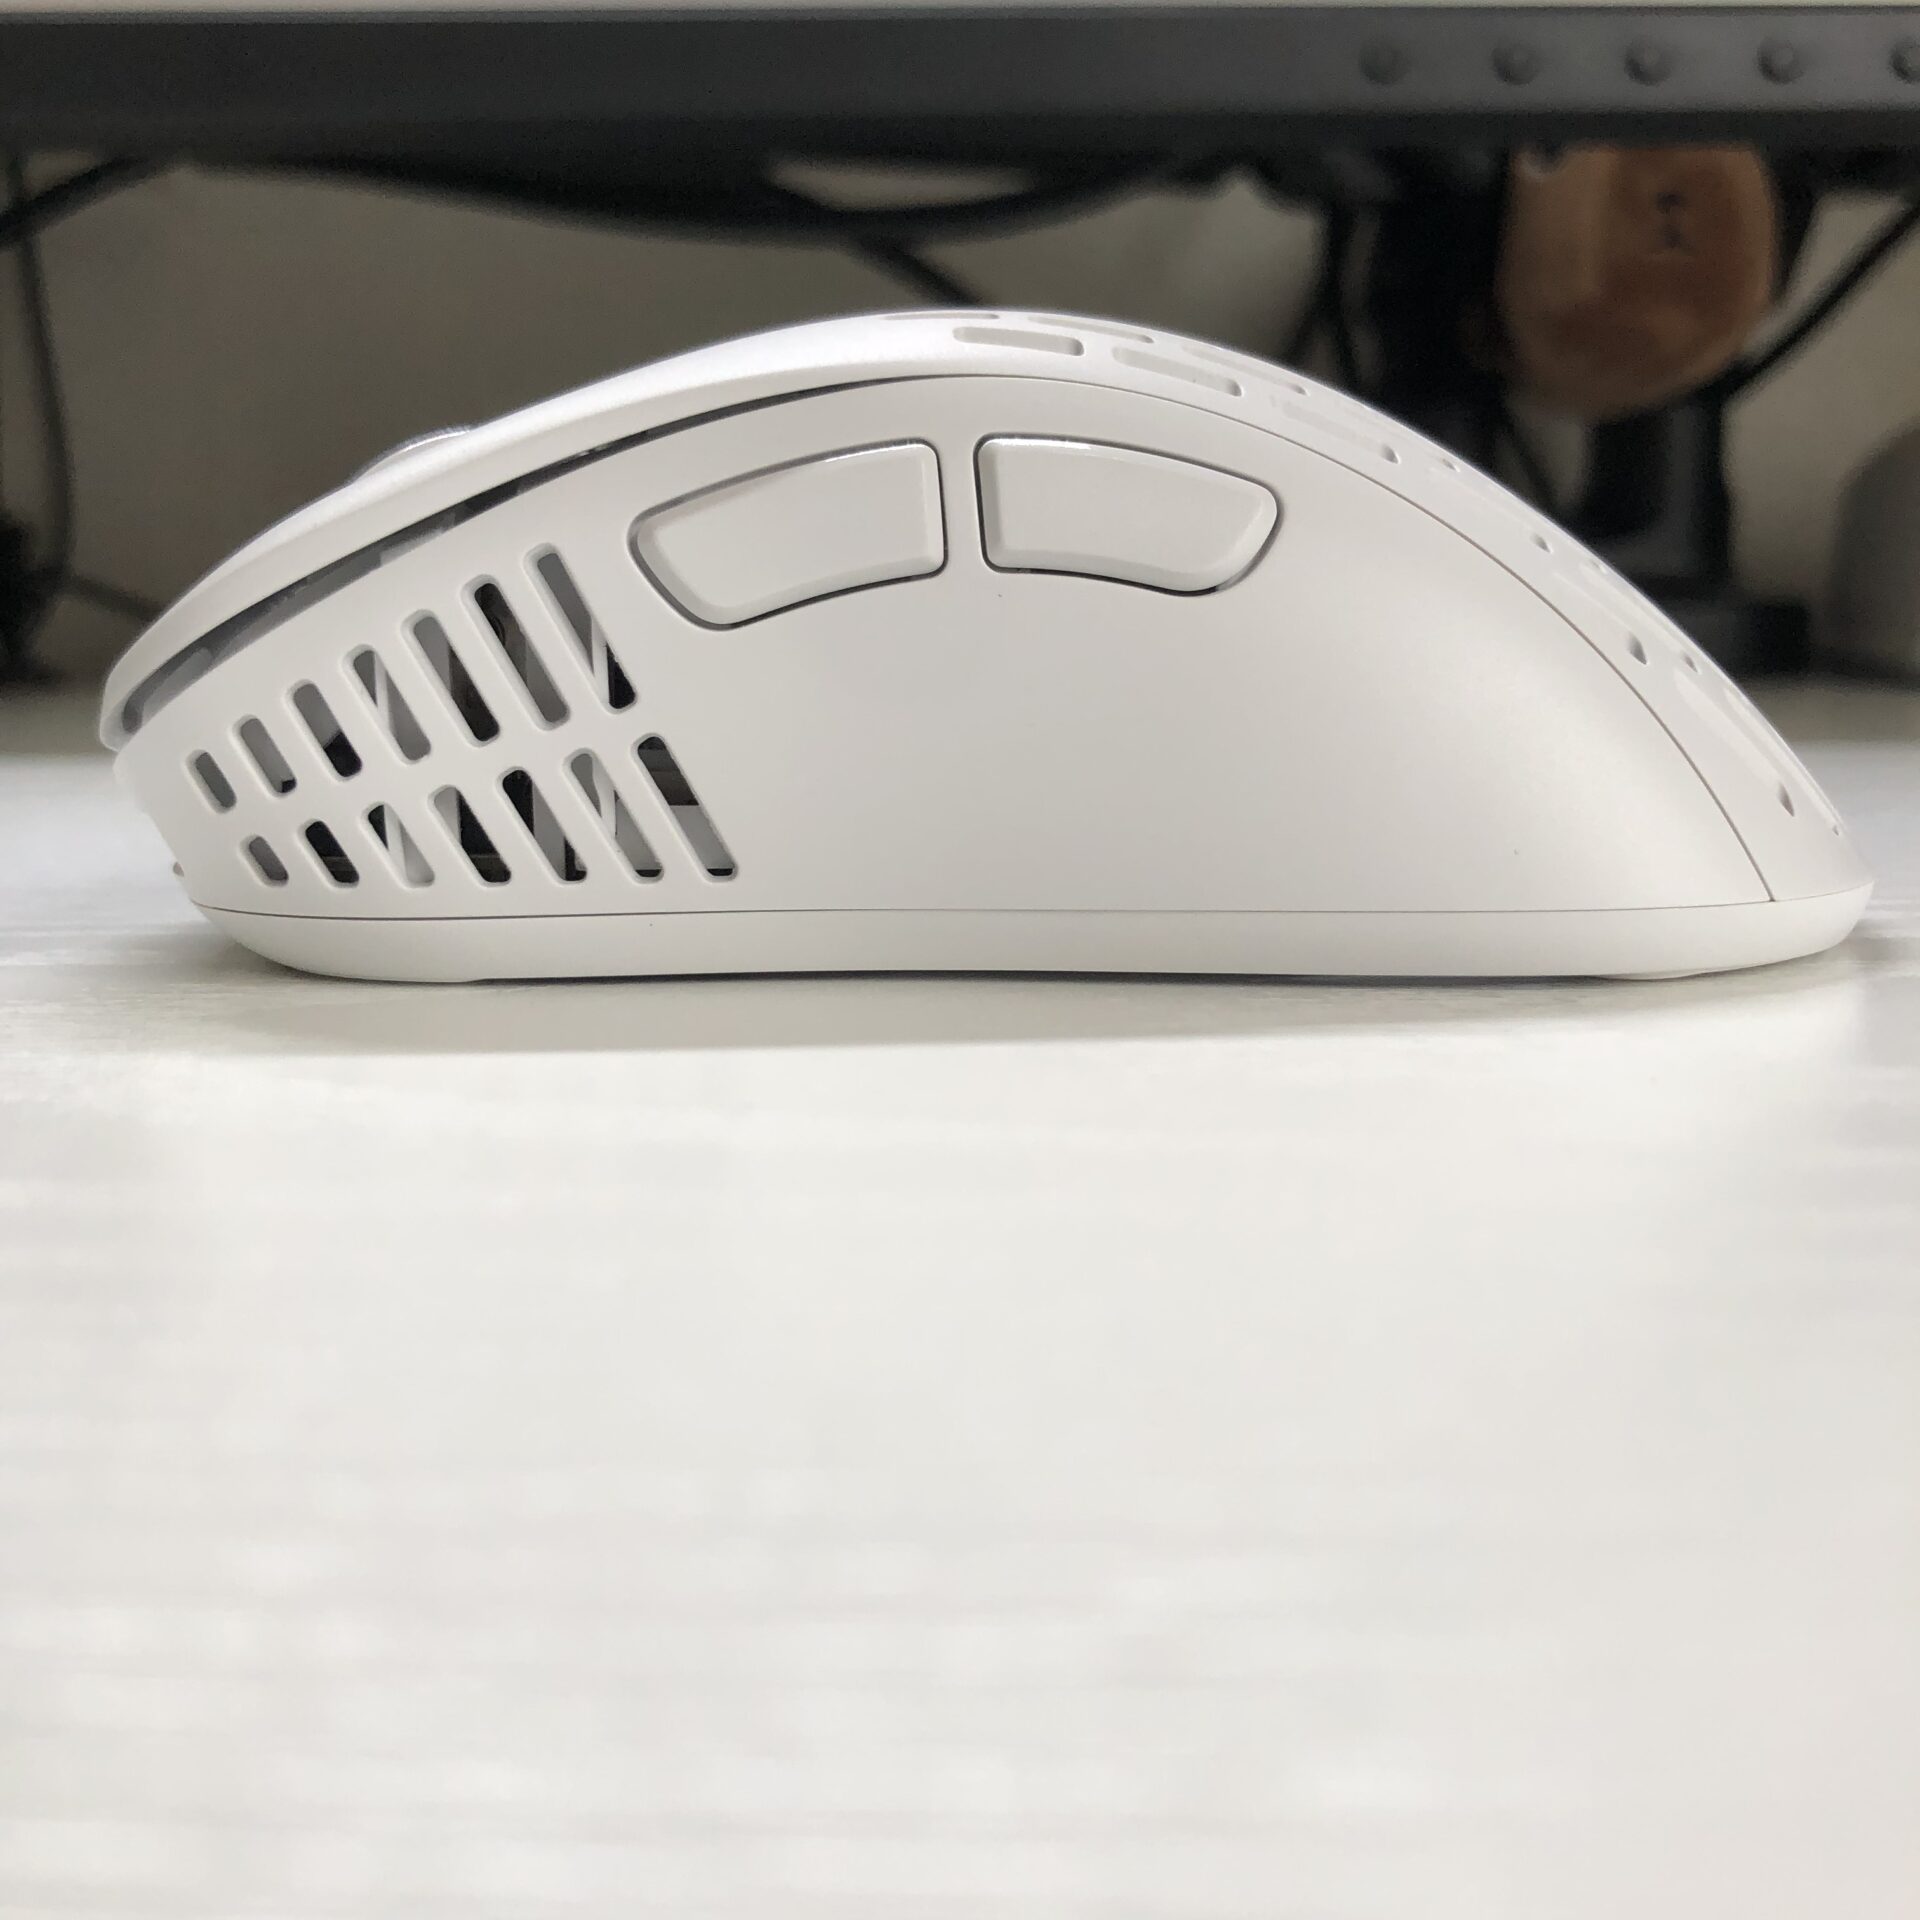 xlite v2 mini wireless mouse leftside